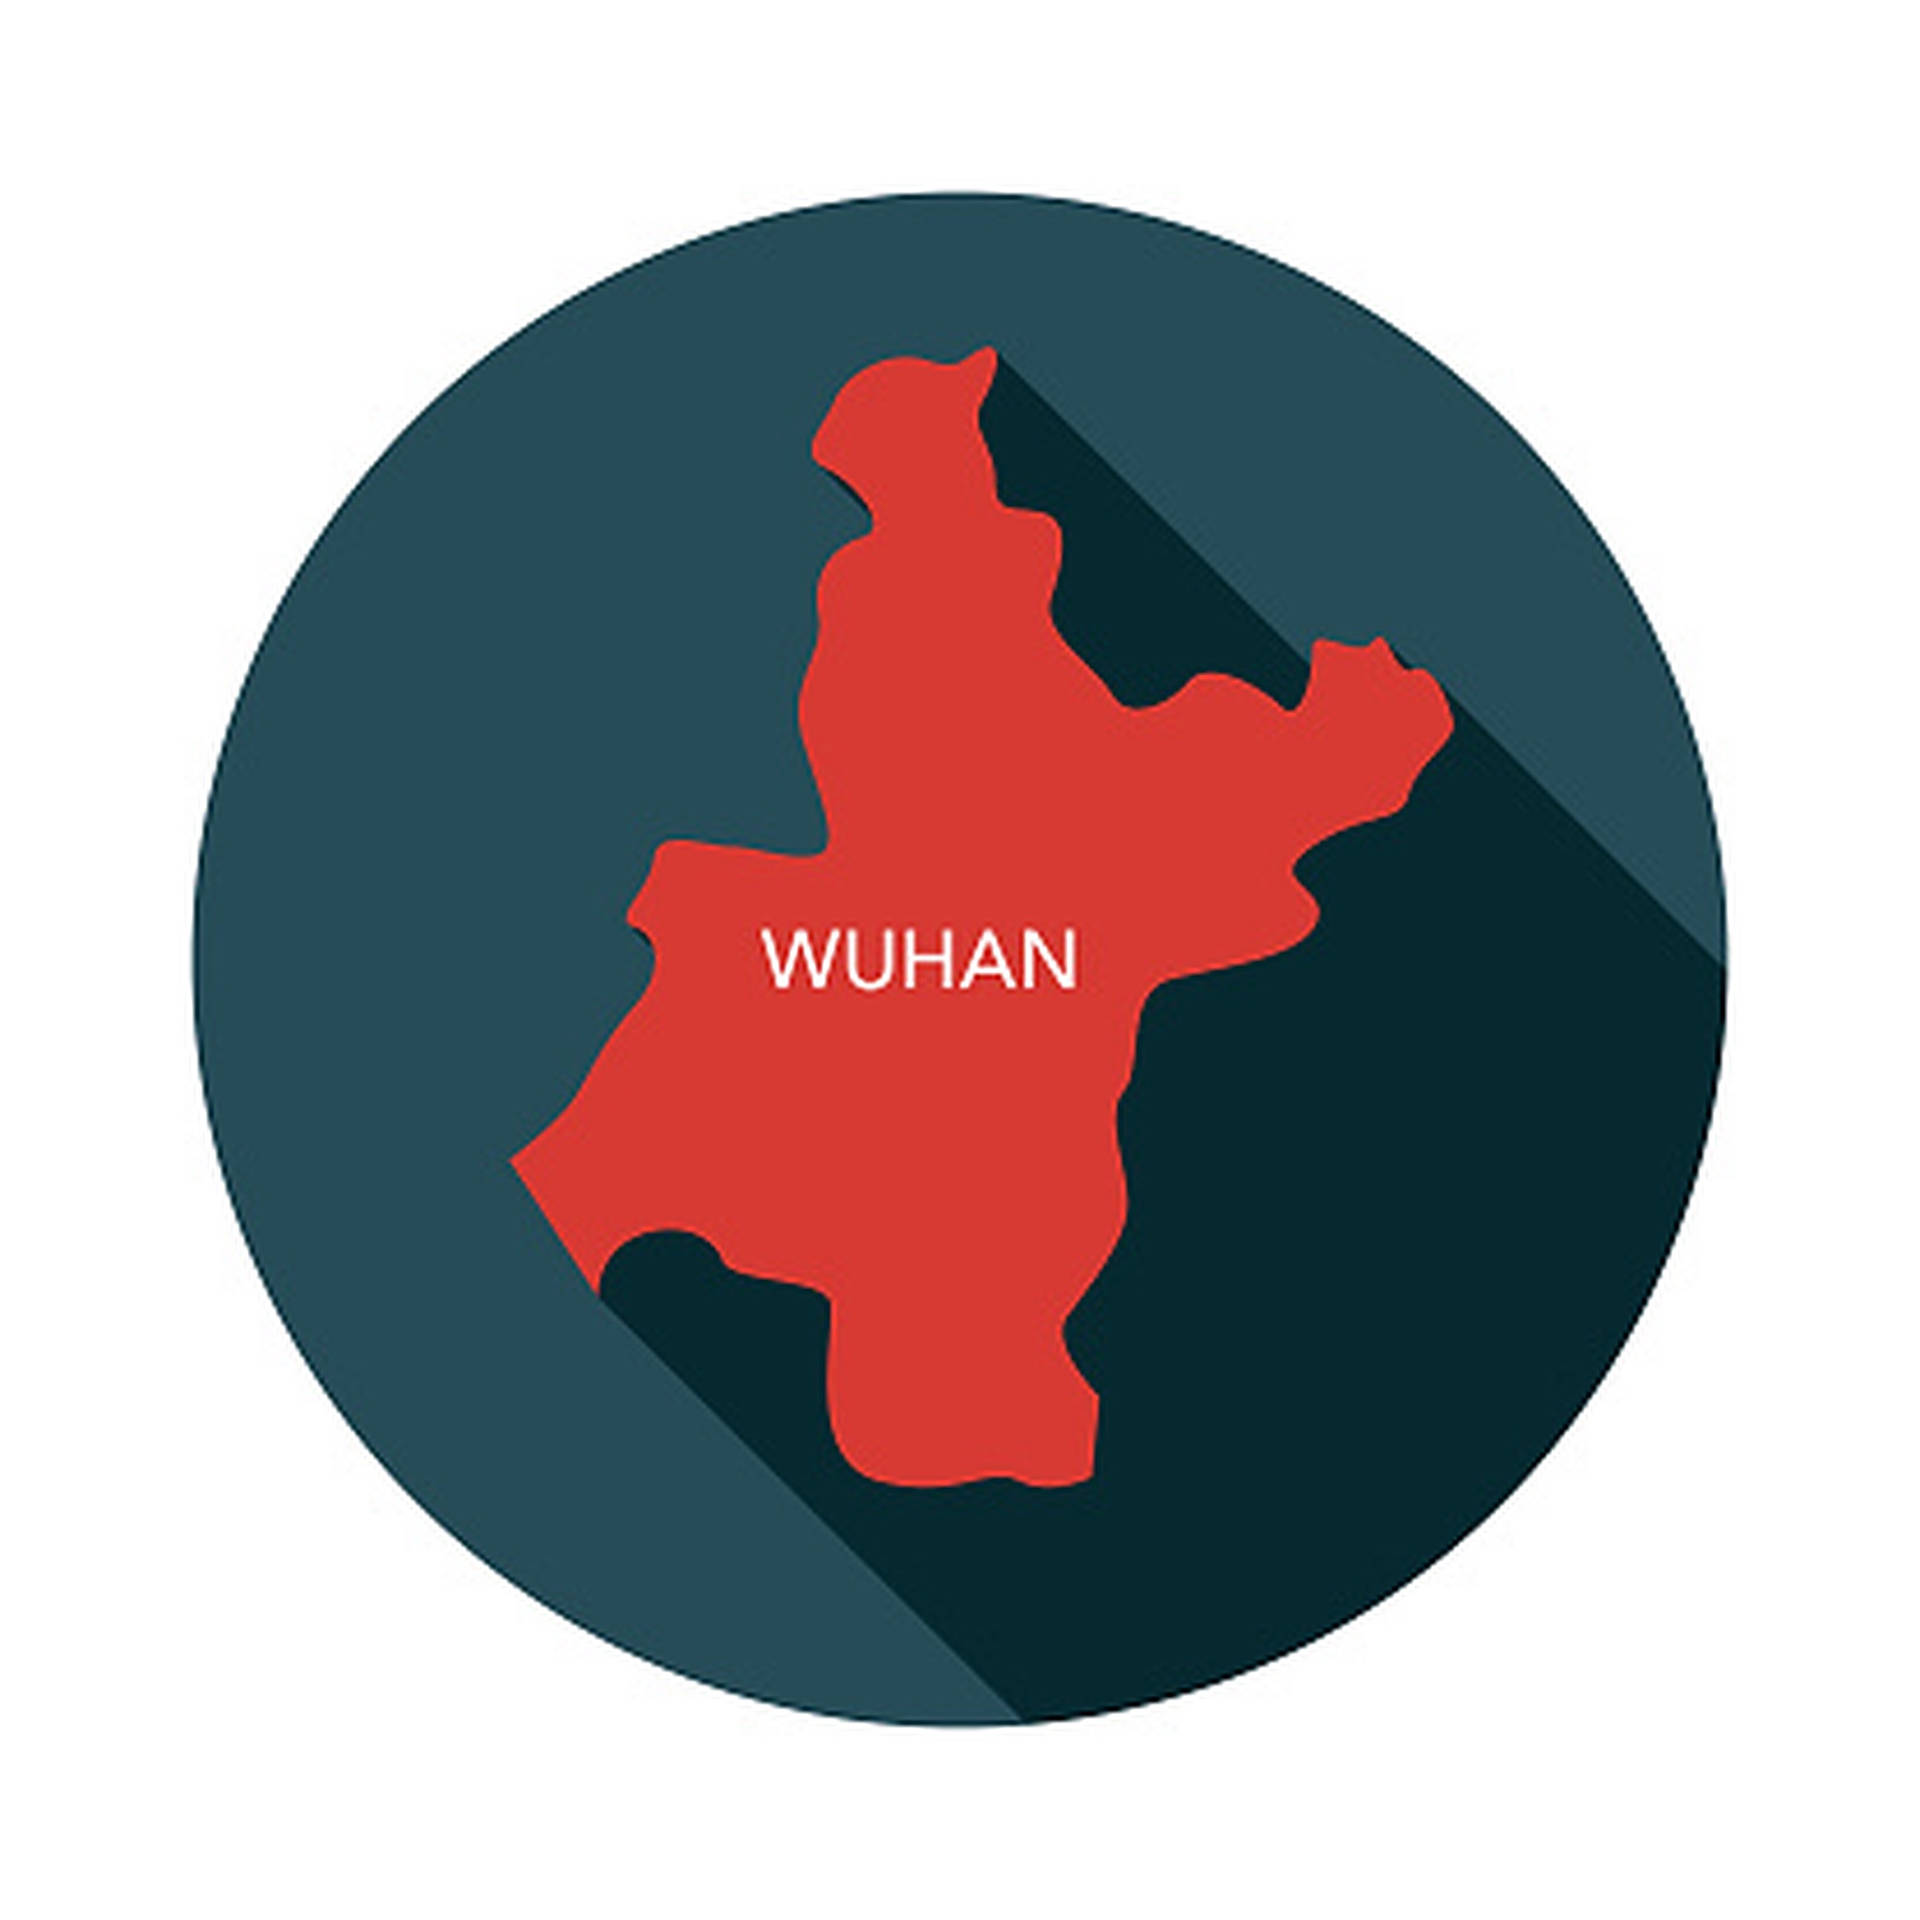 Wuhan Circle Map Logo Background